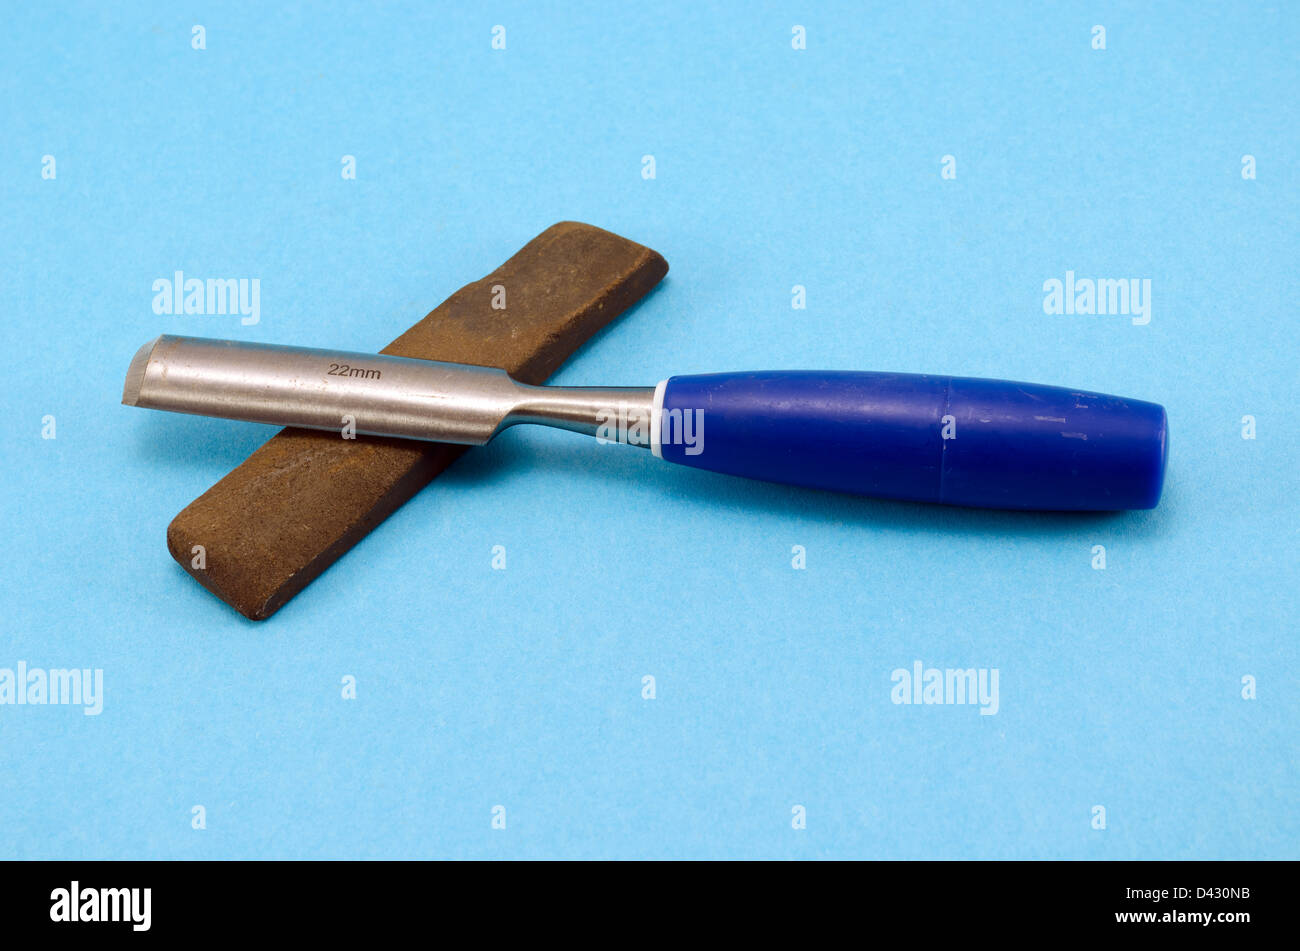 Meißel, Stichel schnitzen Werkzeug für Holz Arbeit und Schleifstein Stein auf blauem Hintergrund. Stockfoto